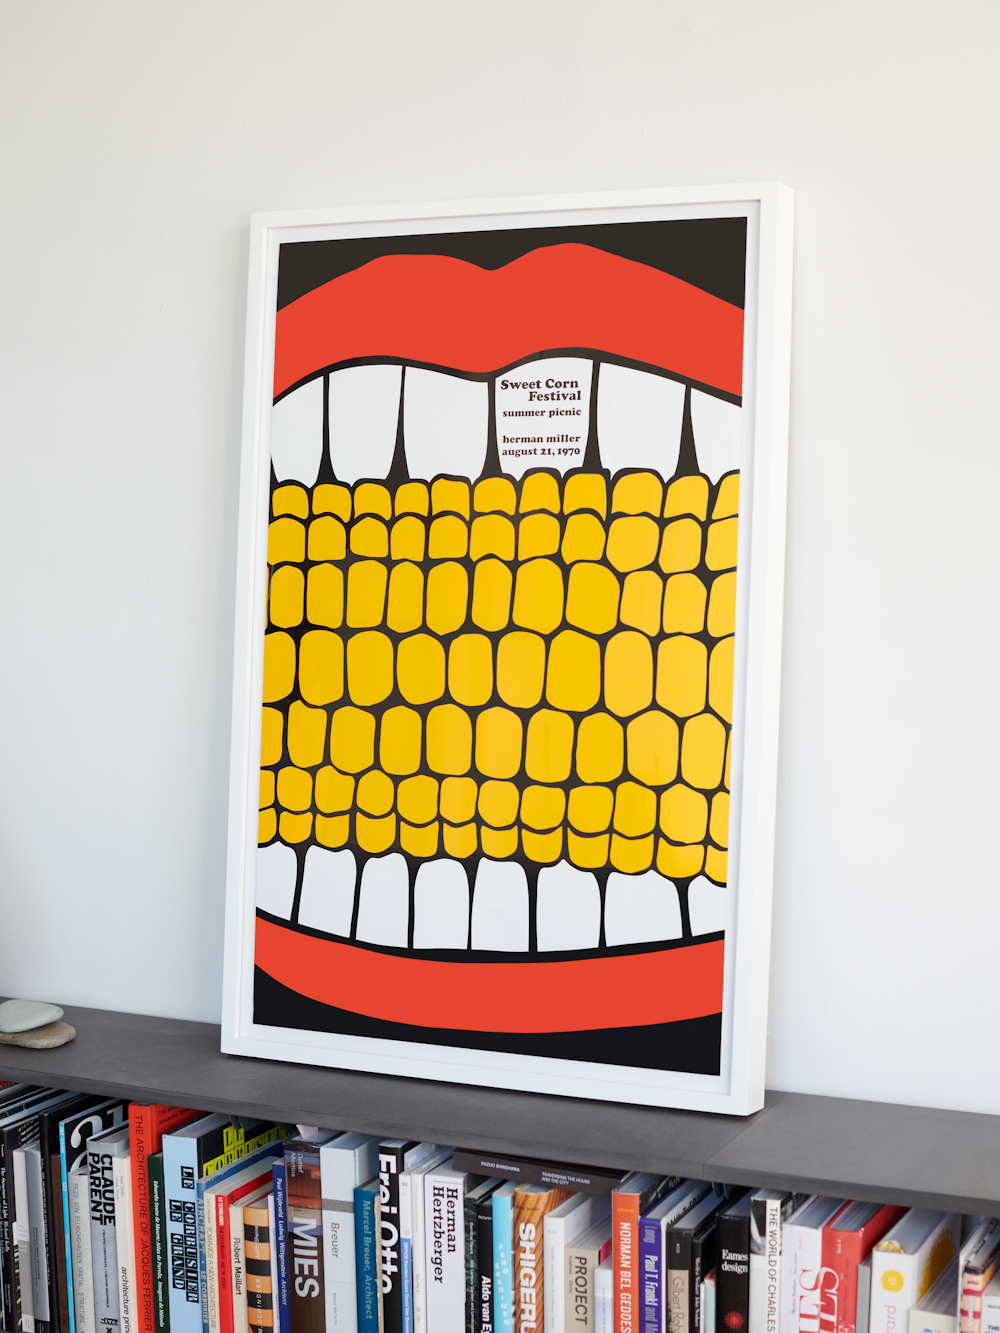 Sweet Corn Picnic Poster at Leon Ransmeier's Studio